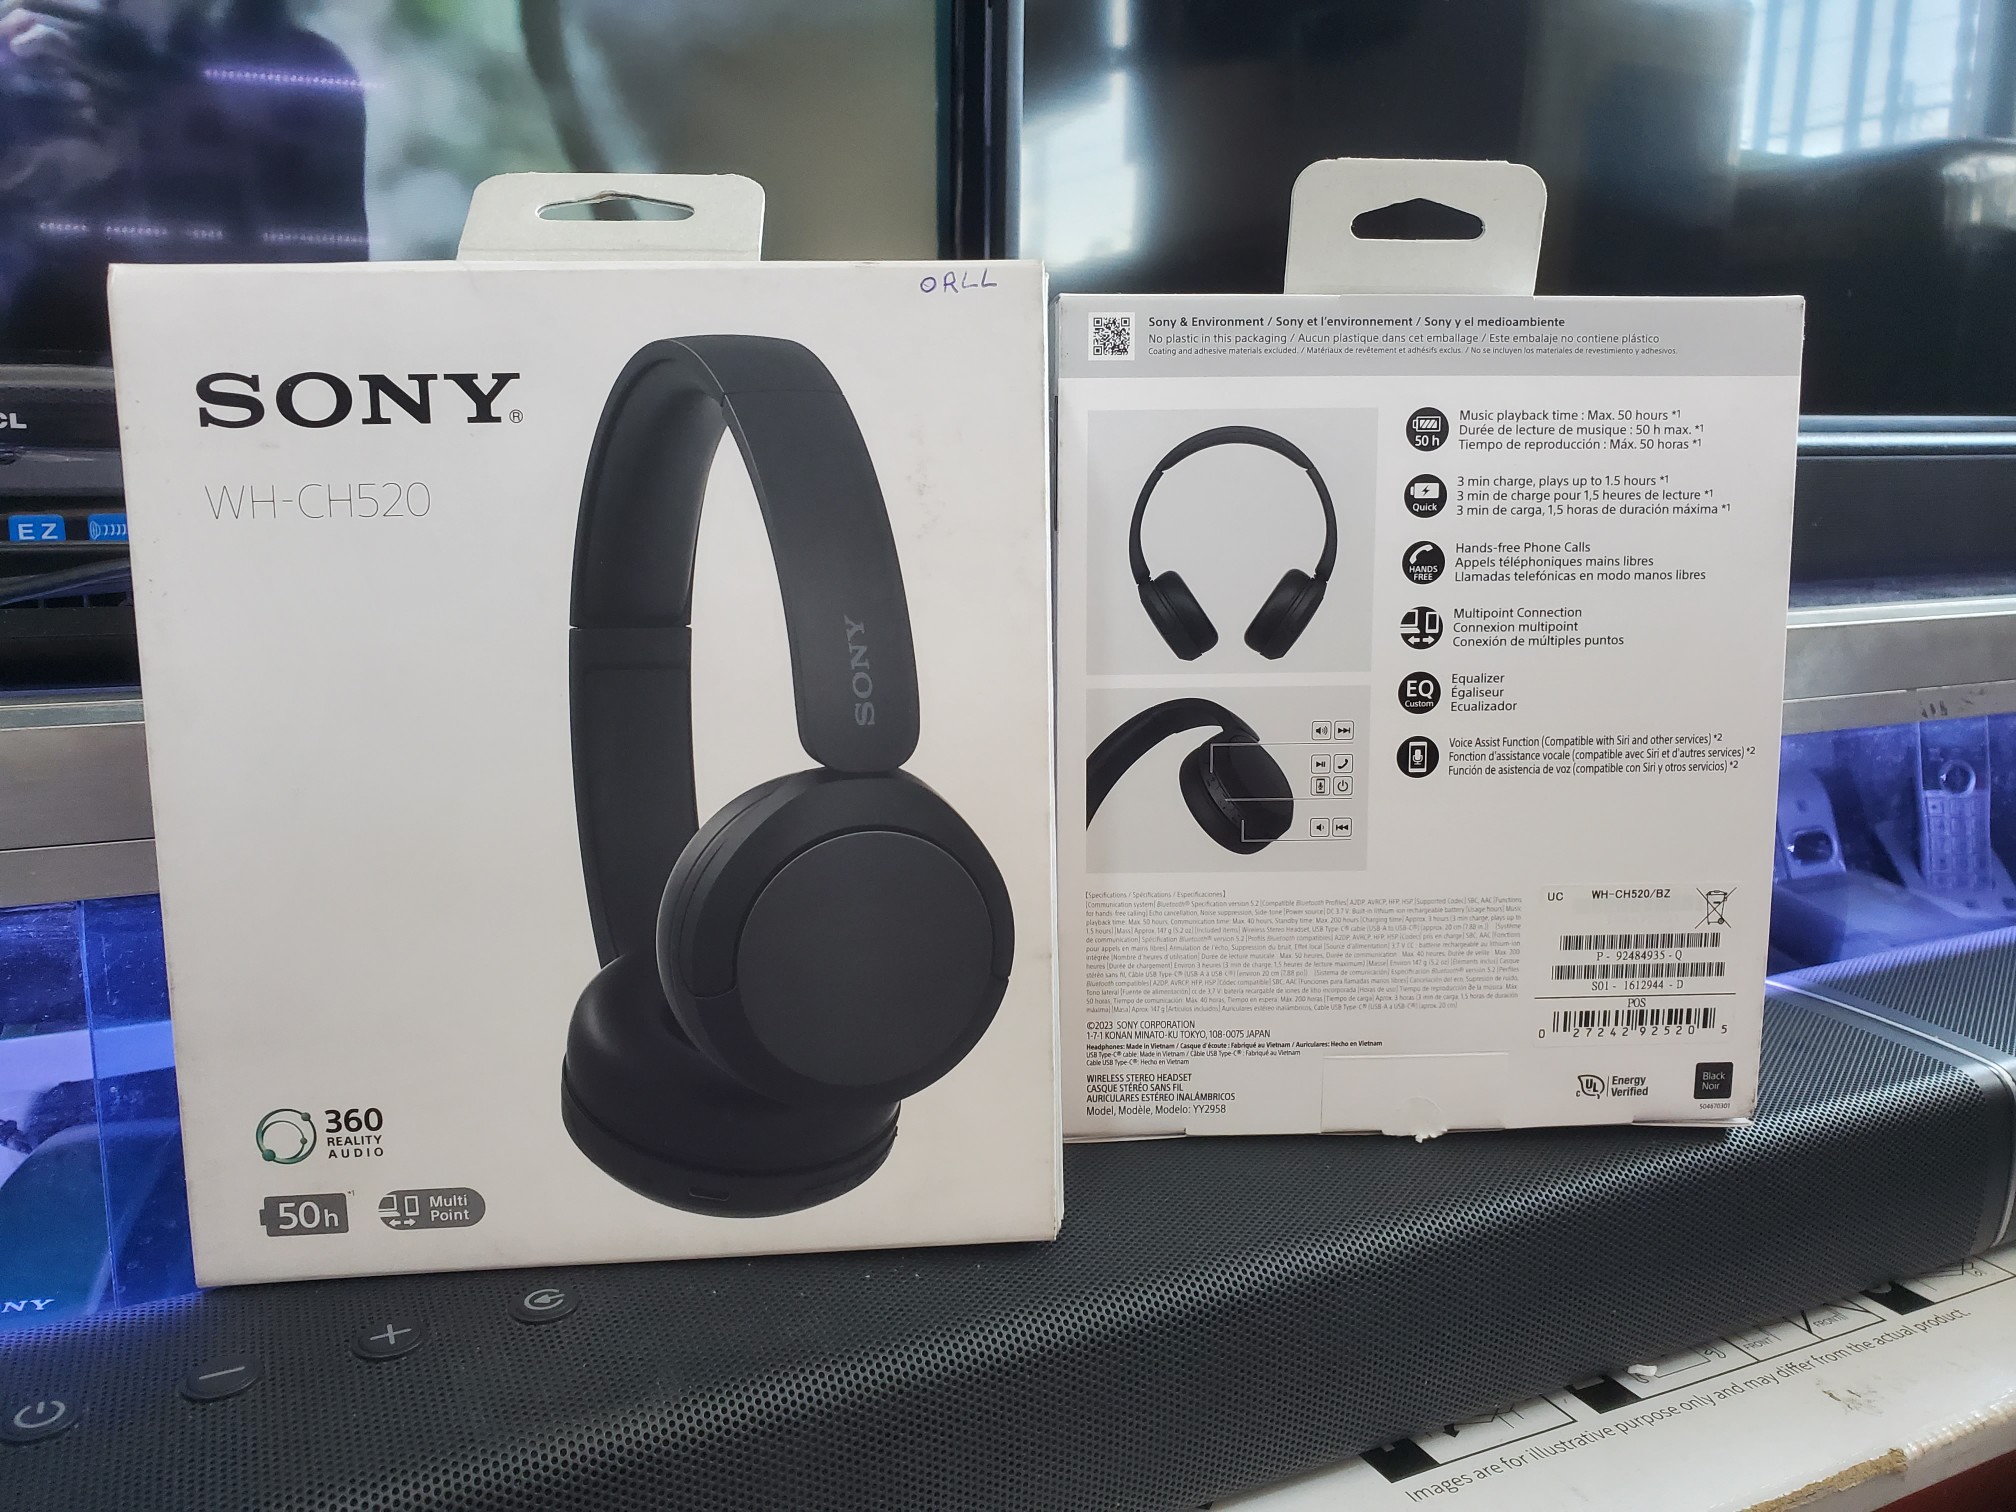 camaras y audio - Sony WH-CH520 audífonos inalambrico con micrófono integrado